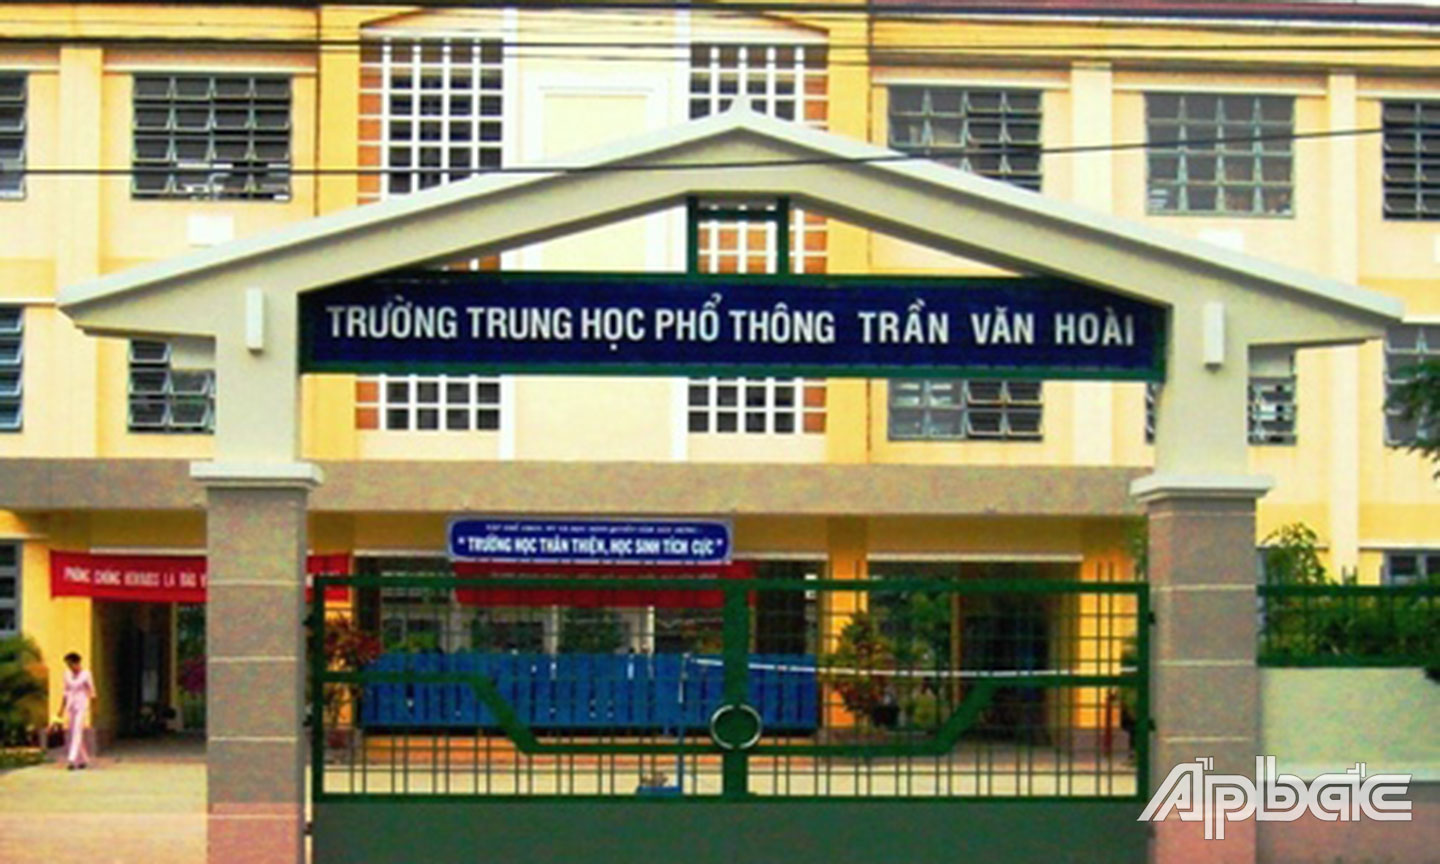 Trường THPT vinh dự mang tên Trần Văn Hoài, tọa lạc thị trấn Chợ Gạo.